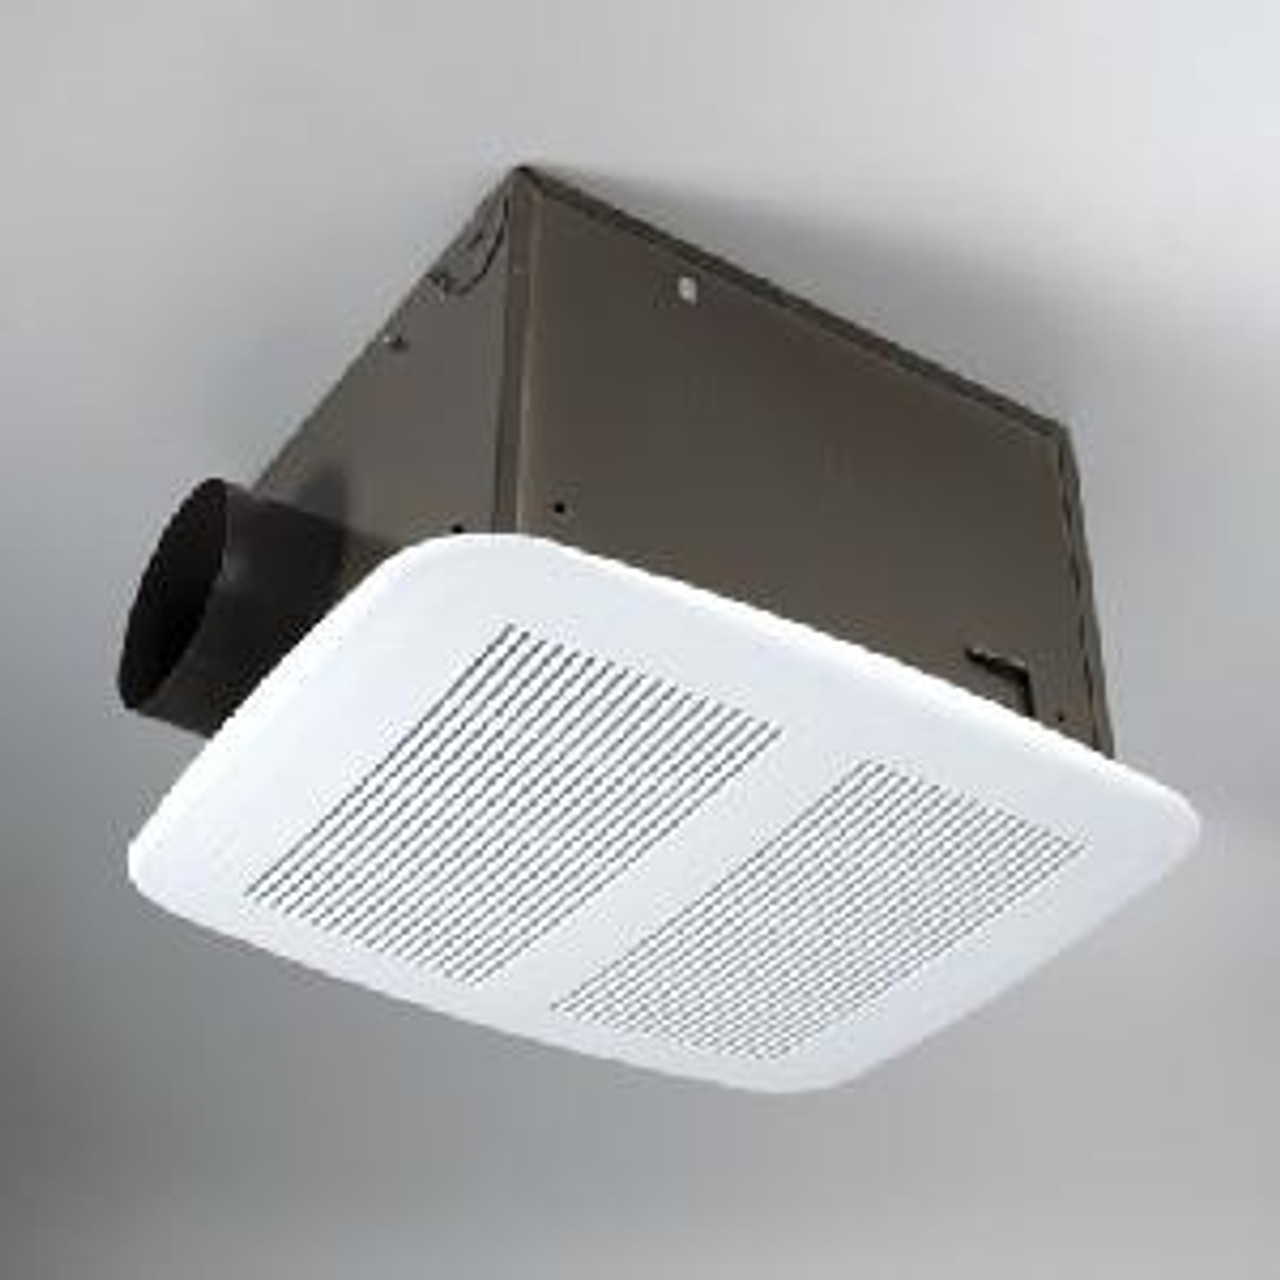 Broan Nutone 110 Cfm Ceiling Fan Qt110 Saez Distributors